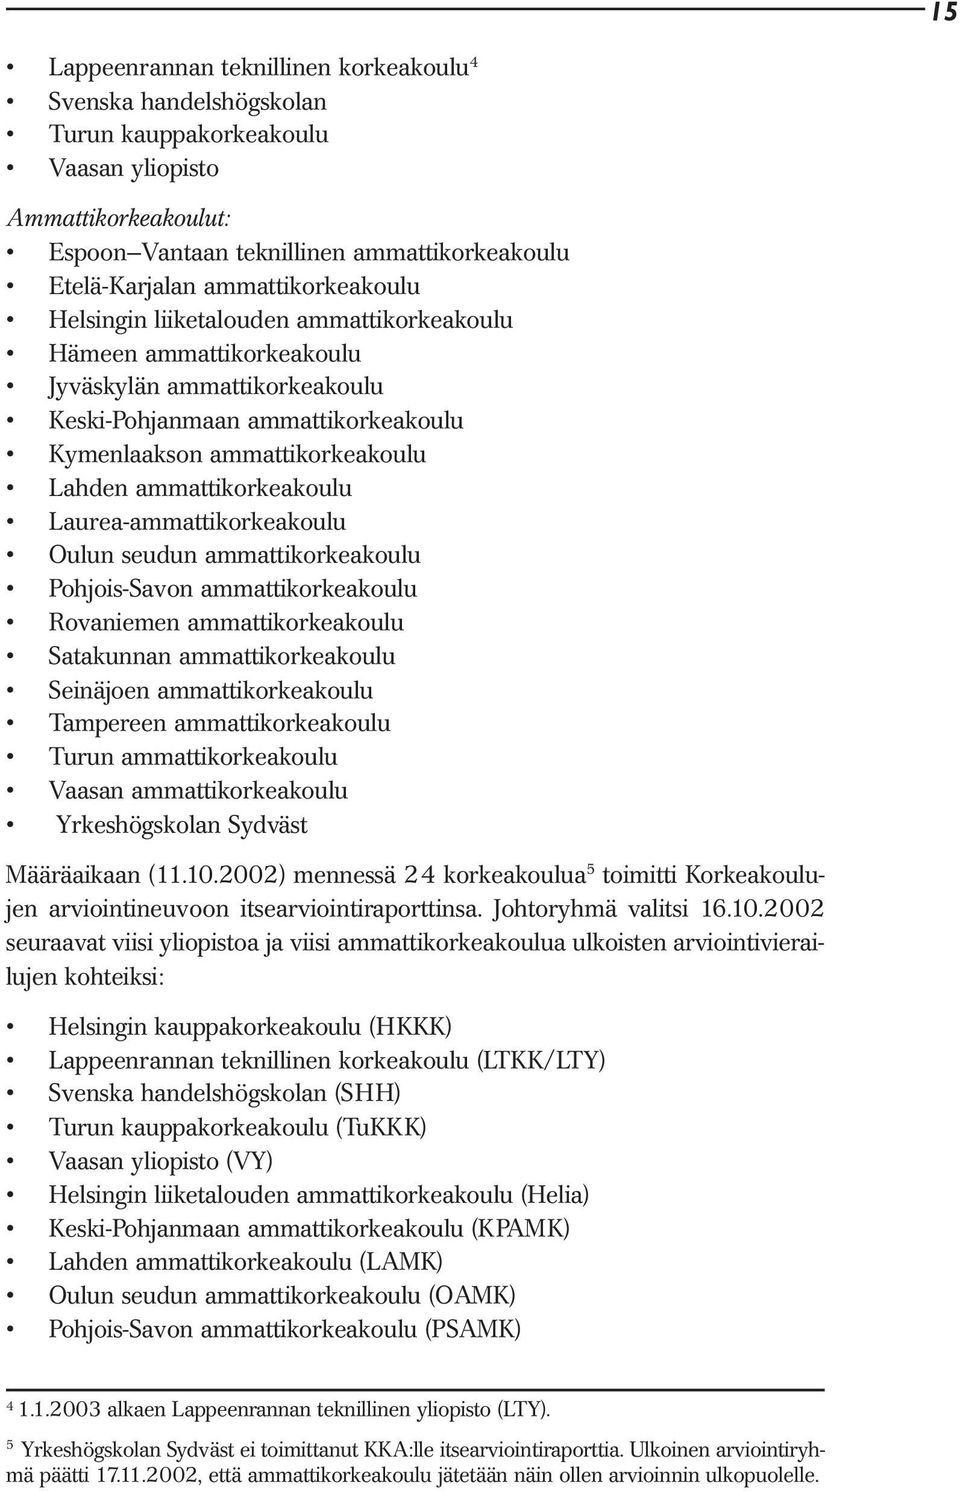 ammattikorkeakoulu Laurea-ammattikorkeakoulu Oulun seudun ammattikorkeakoulu Pohjois-Savon ammattikorkeakoulu Rovaniemen ammattikorkeakoulu Satakunnan ammattikorkeakoulu Seinäjoen ammattikorkeakoulu